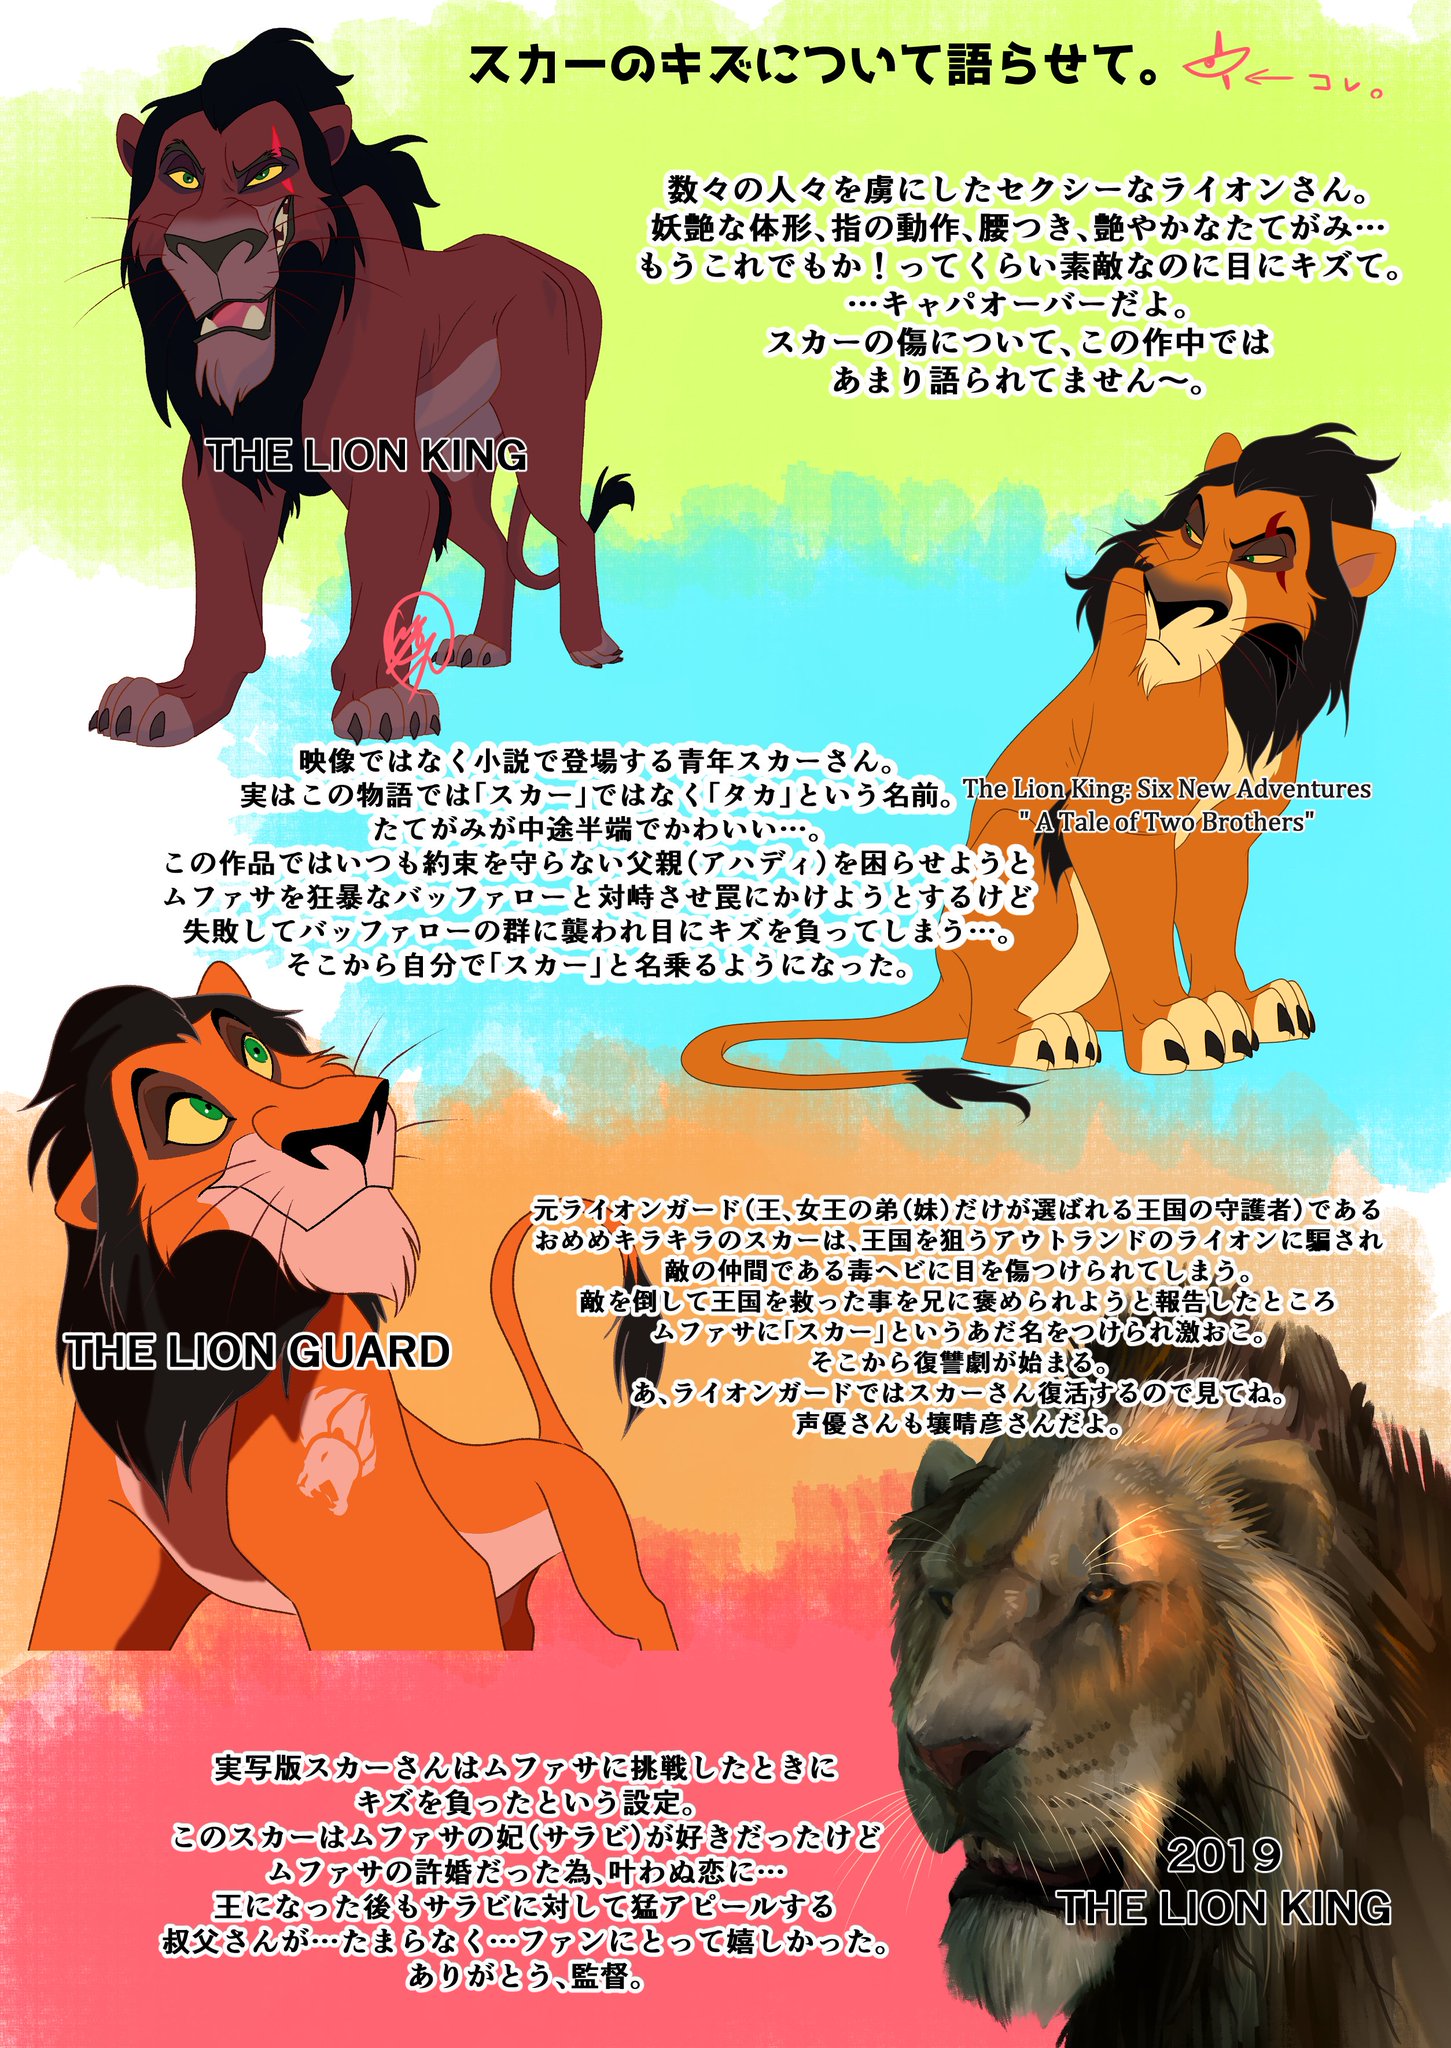 Sasamaru 原稿中 ライオンキングの家系図作ったんで 良かったら見て ライオンキングのやばさ 伝わるかな スカーの過去とかまとめサイト色々ありますがlgとspがごっちゃになってしまっているのが多かったのでまとめました 参考にどうぞ ここ